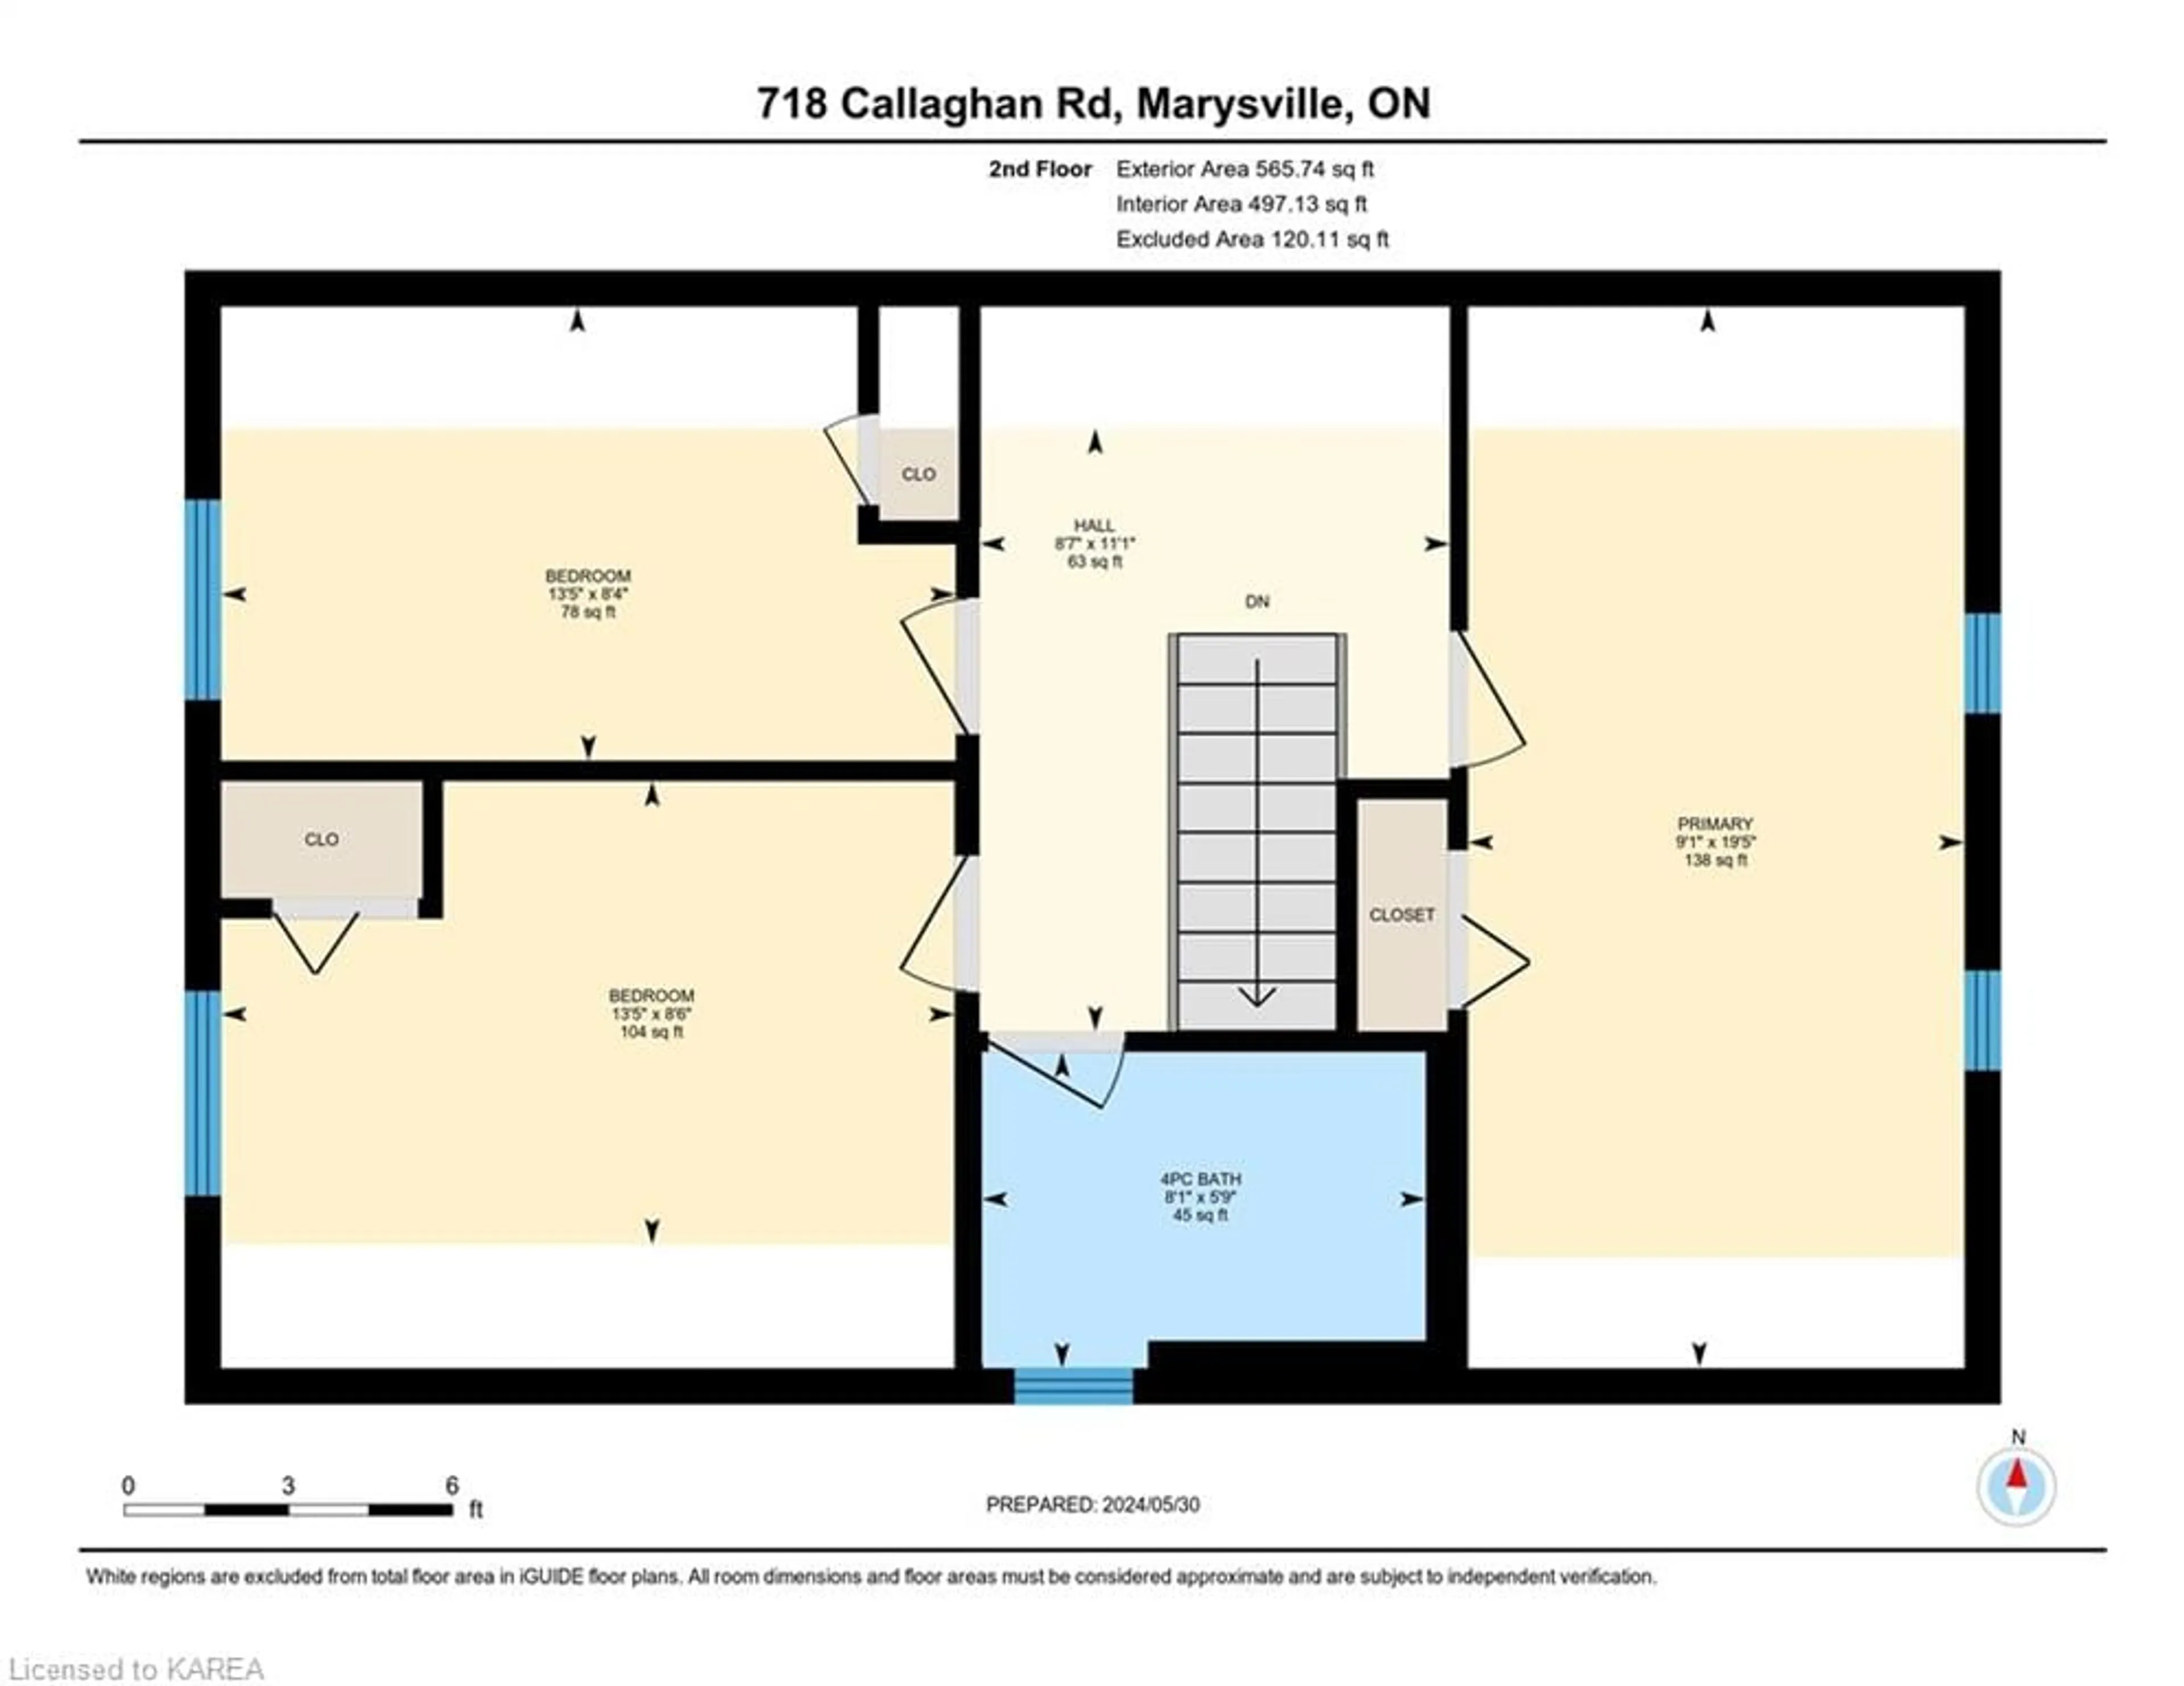 Floor plan for 718 Callaghan Rd, Marysville Ontario K0K 2N0